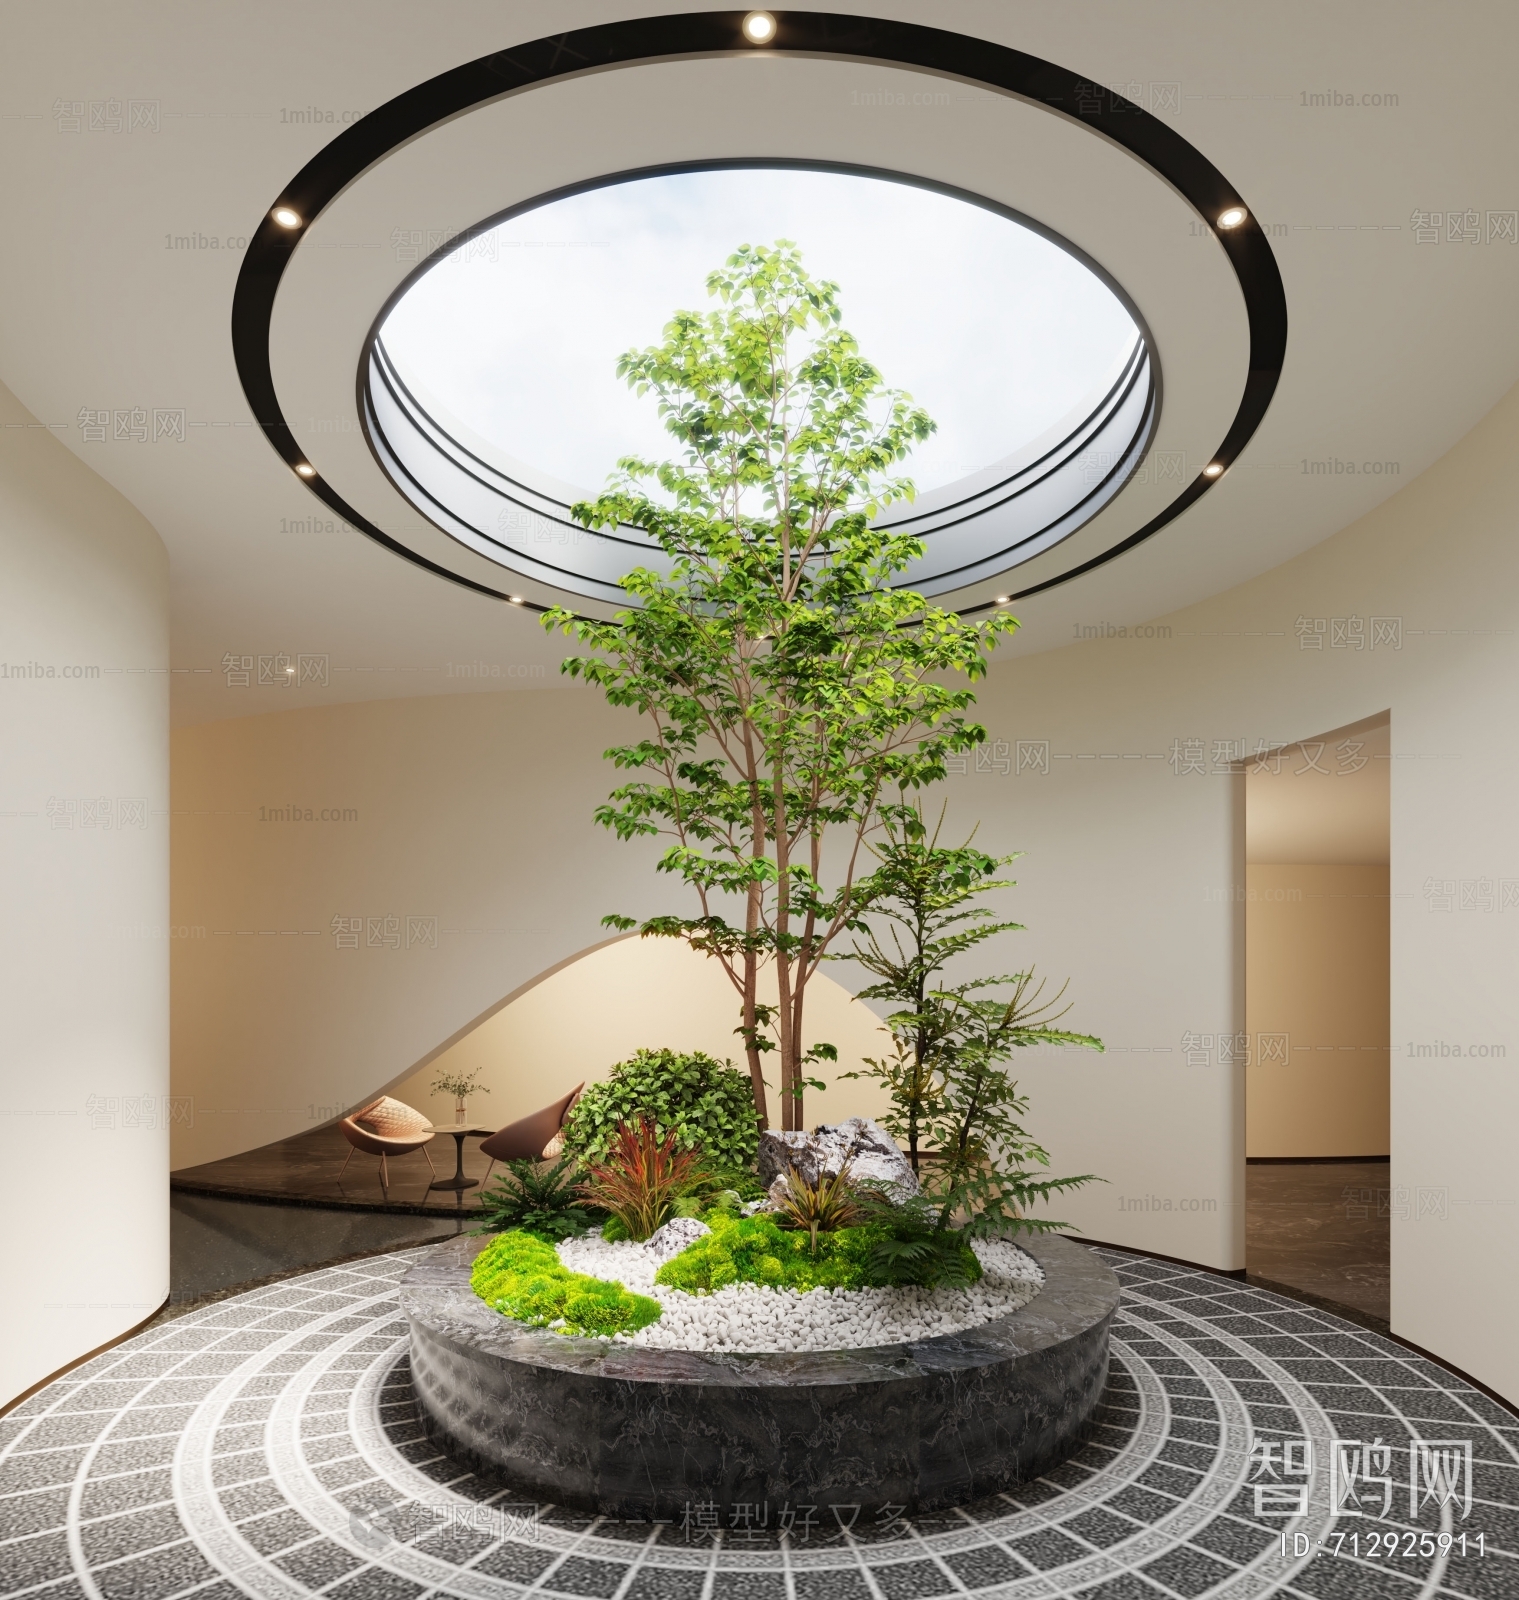 现代天井植物景观小品